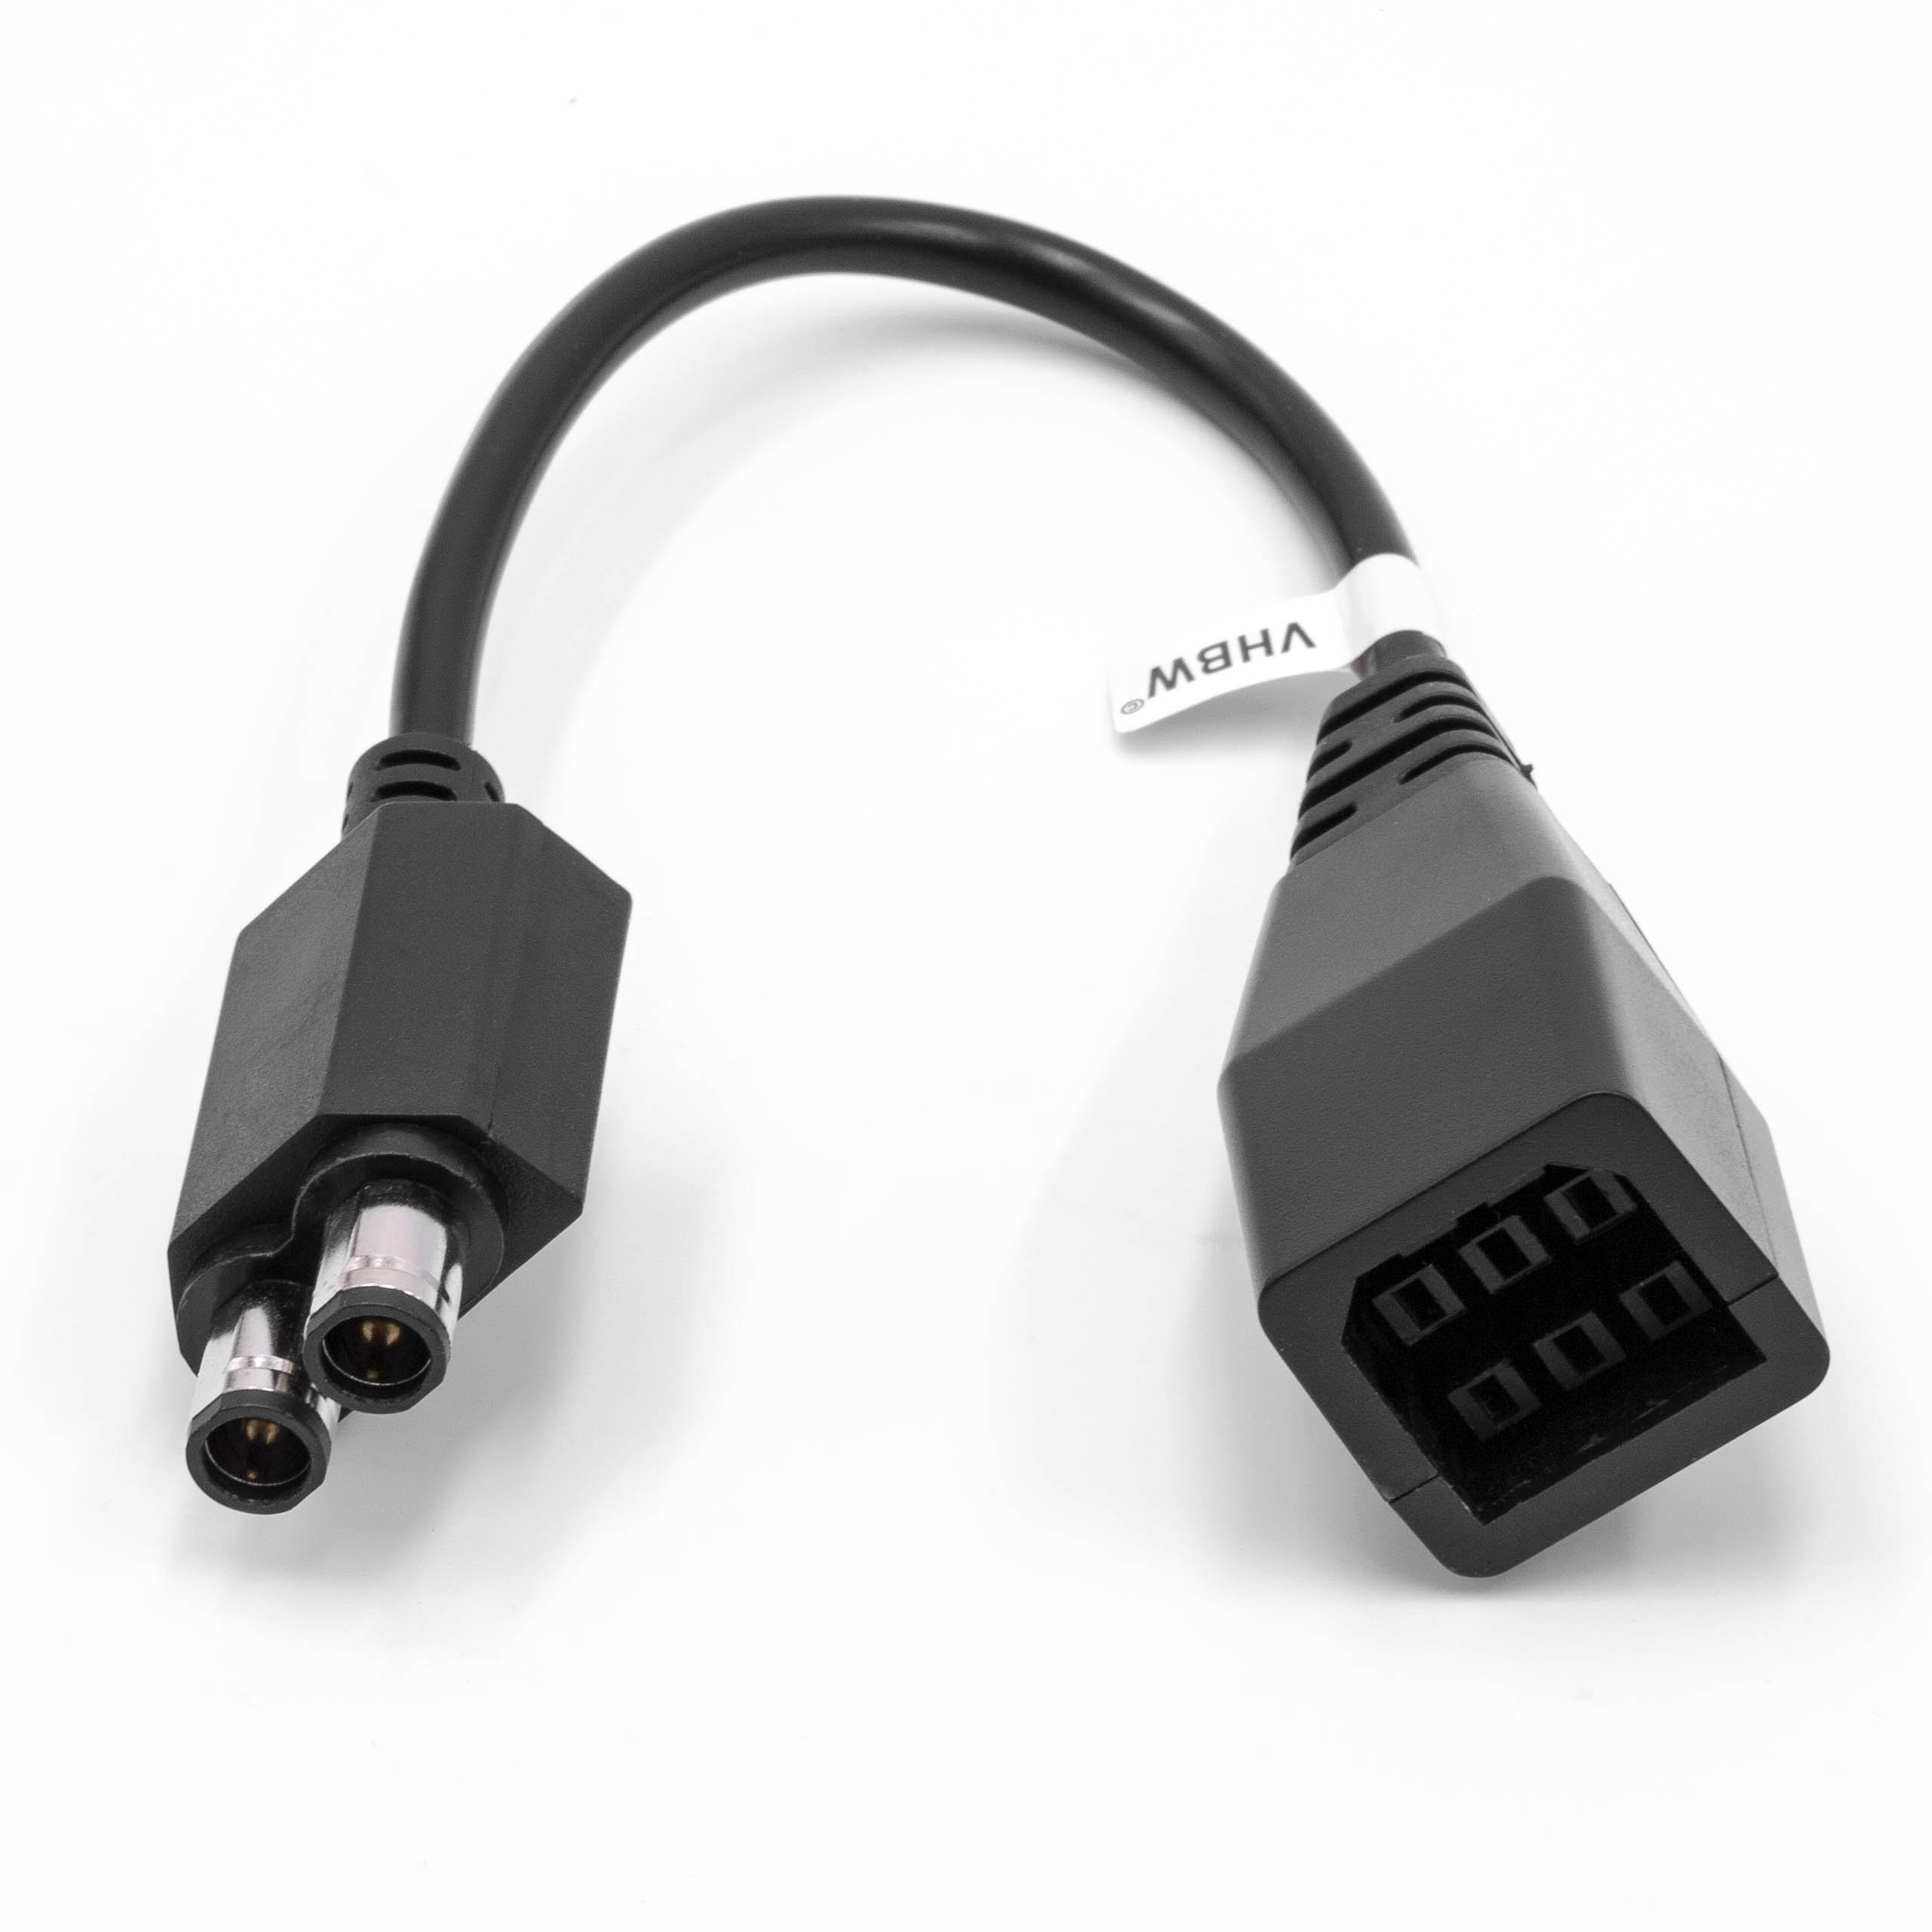 Cable adaptador para fuente alimentación para consola de juegos Microsoft Xbox One, 360, 360 Slim - 27 cm